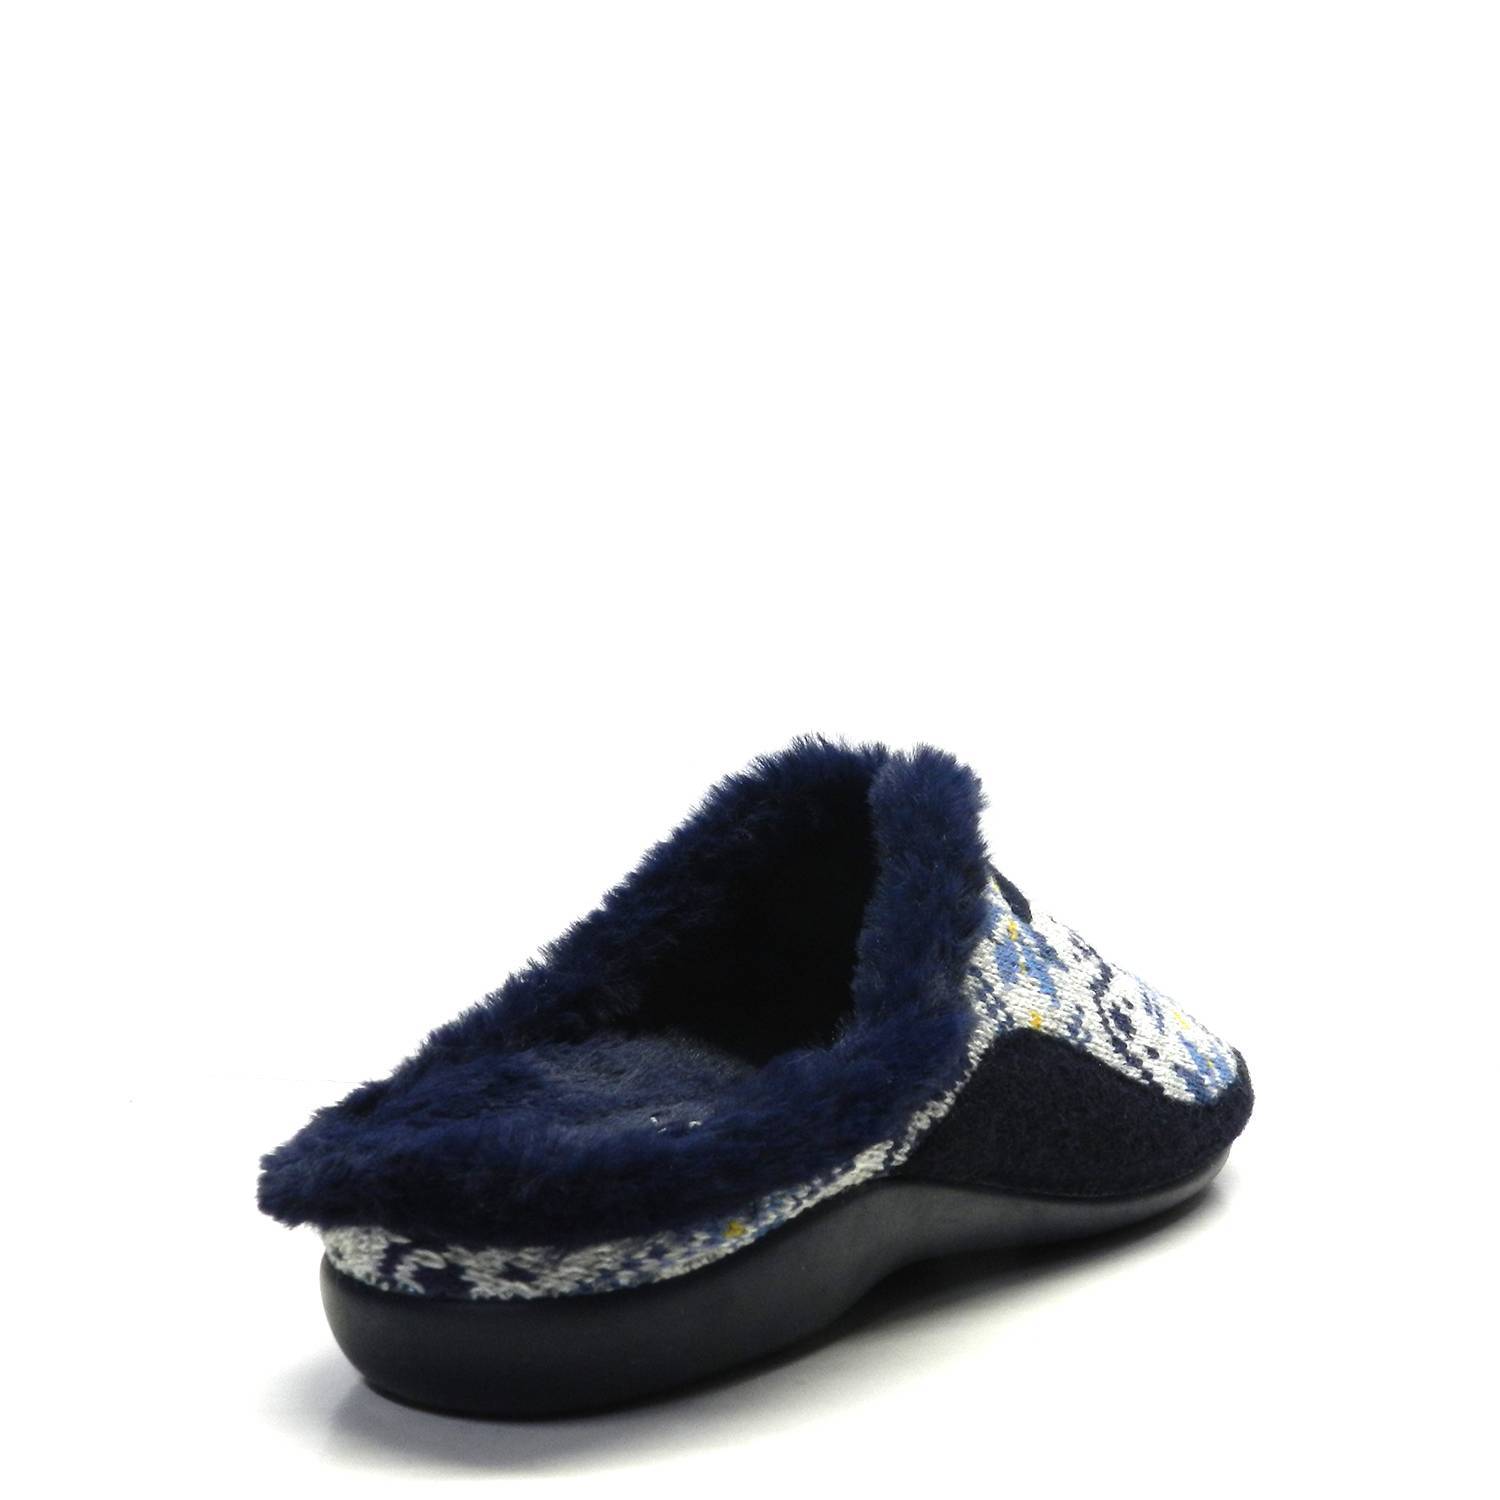 Zapatillas casa de la marca Garzon, modelon 7450.254 en color azul. Zapatillas de casa en formato chancla, con talón al aire. Suela de goma antideslizante con 2 cm de cuña. Interior de forro abrigo. ¡Muy cómodas!